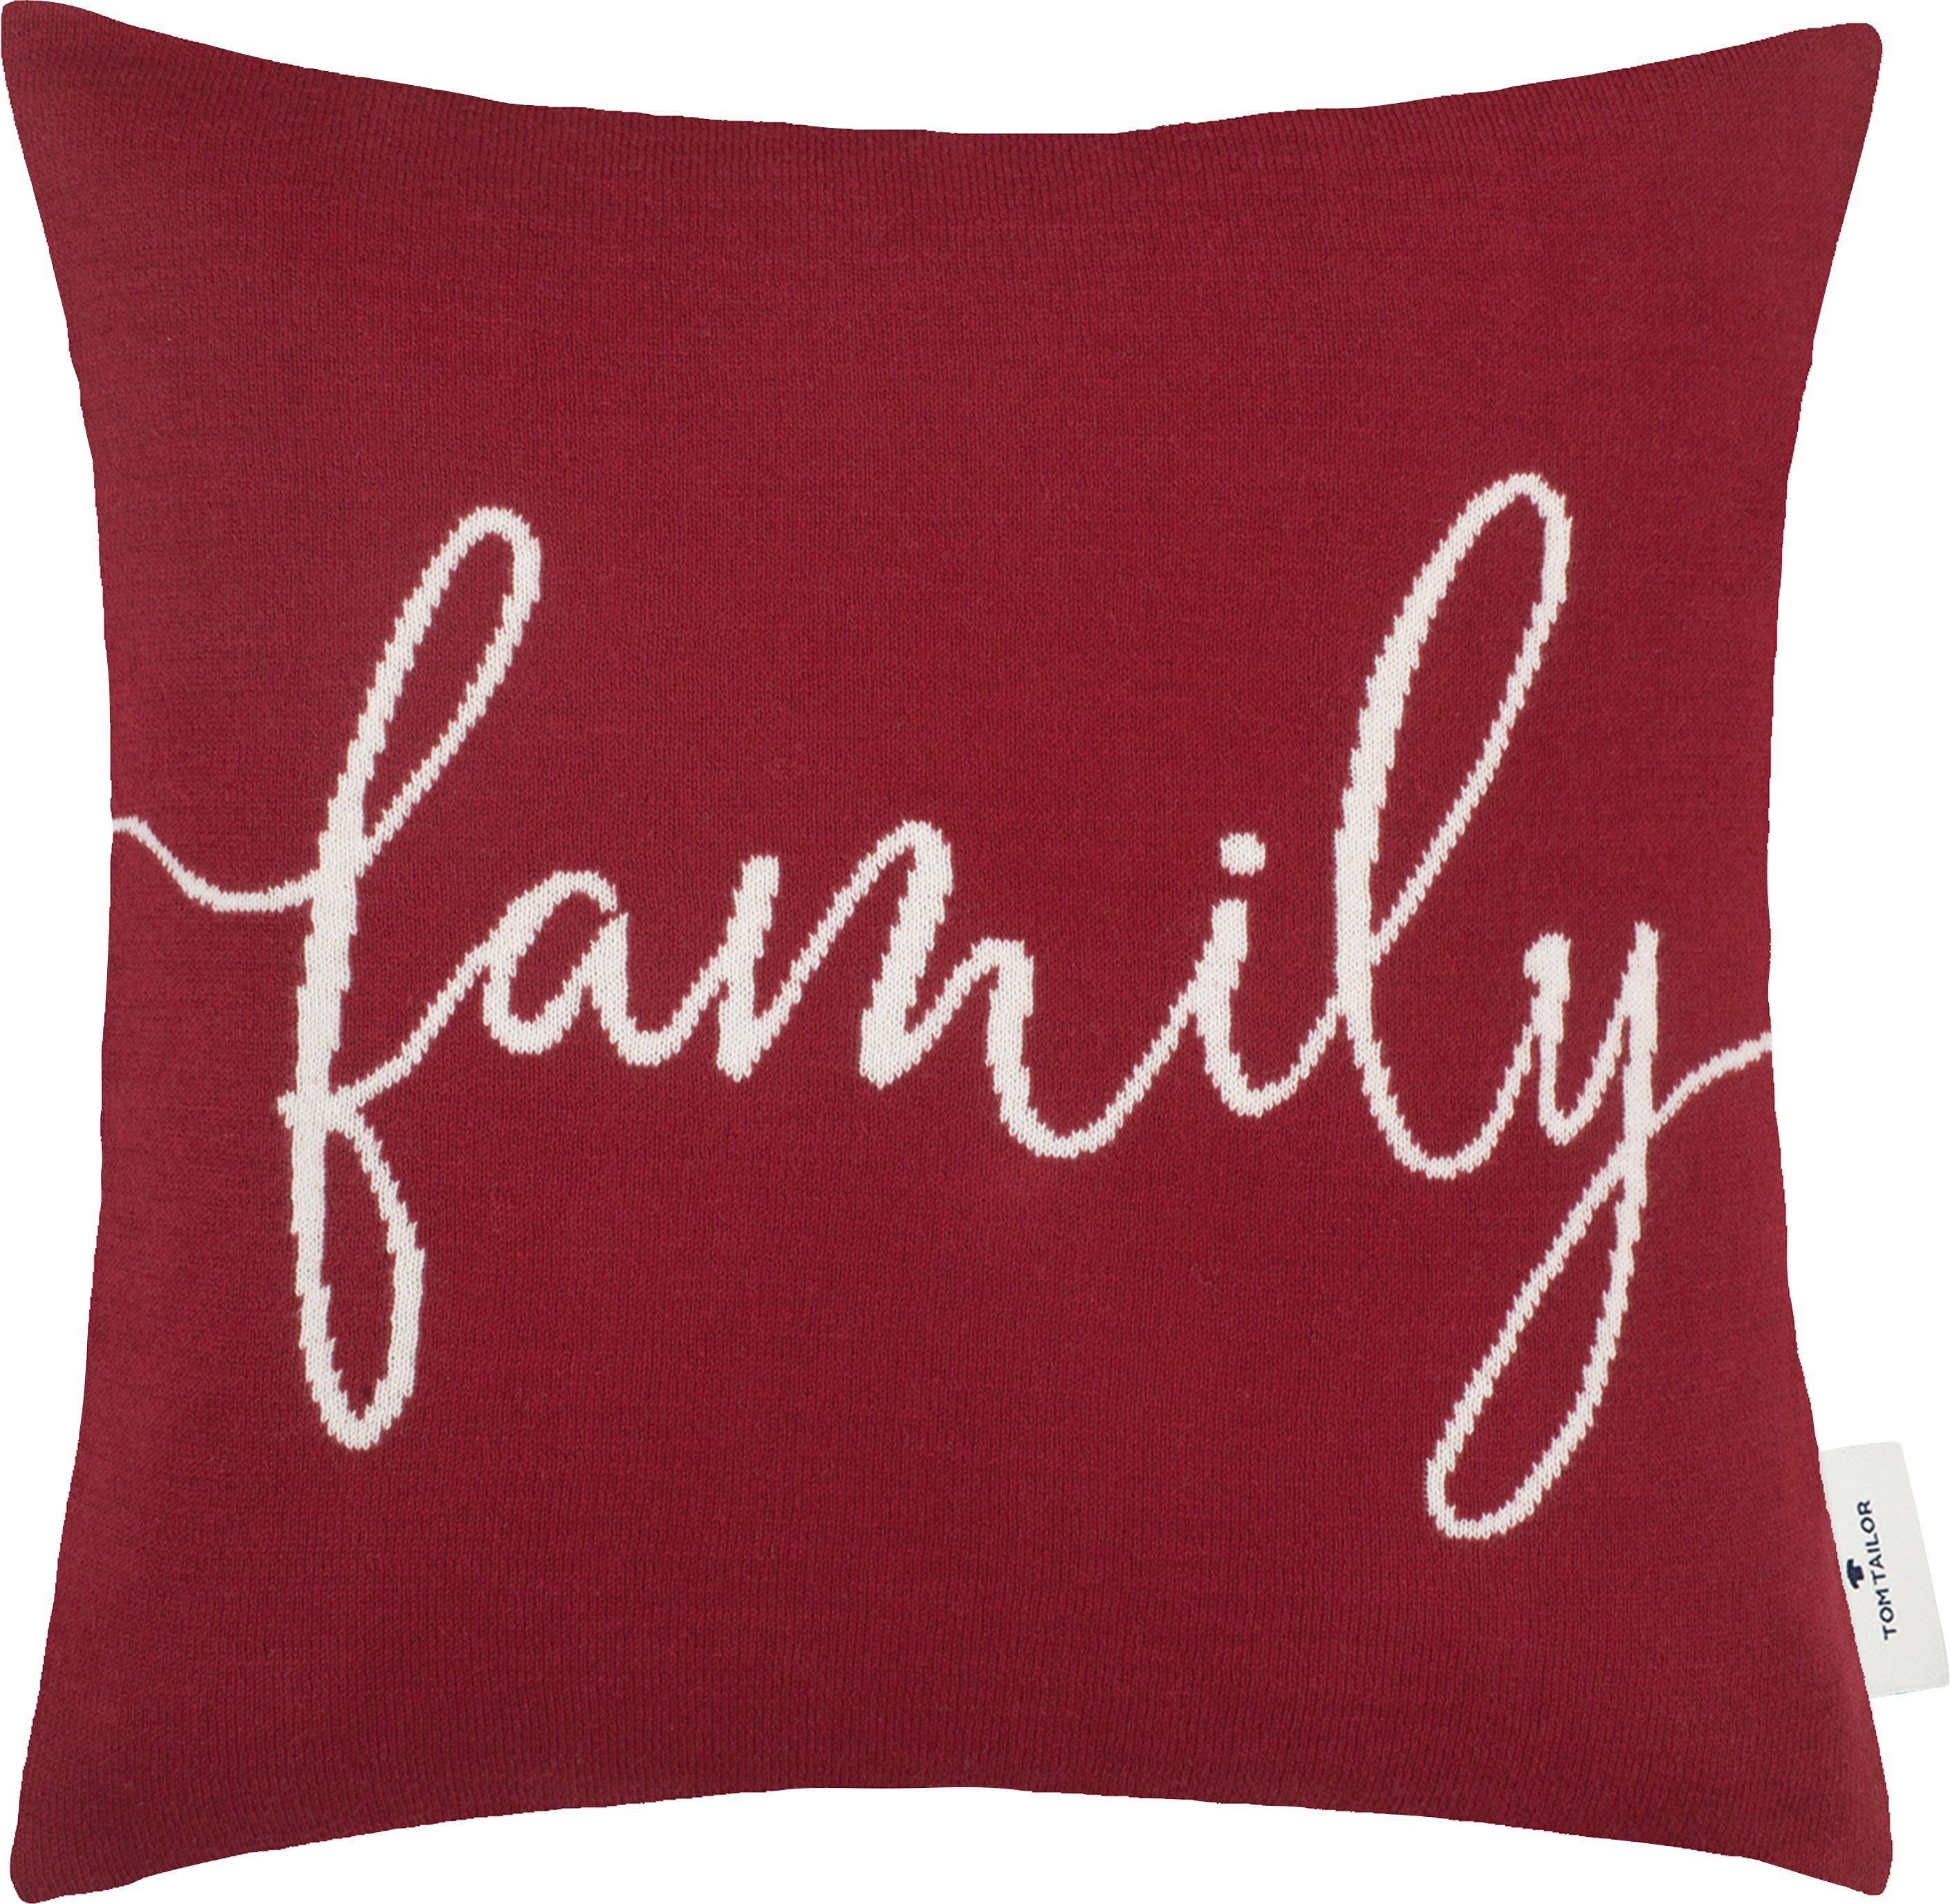 Family, 1 Füllung, Stück aus TAILOR hochwertiger ohne TOM Kissenhülle rot/dunkelrot/bordeaux Baumwolle, HOME Dekokissen